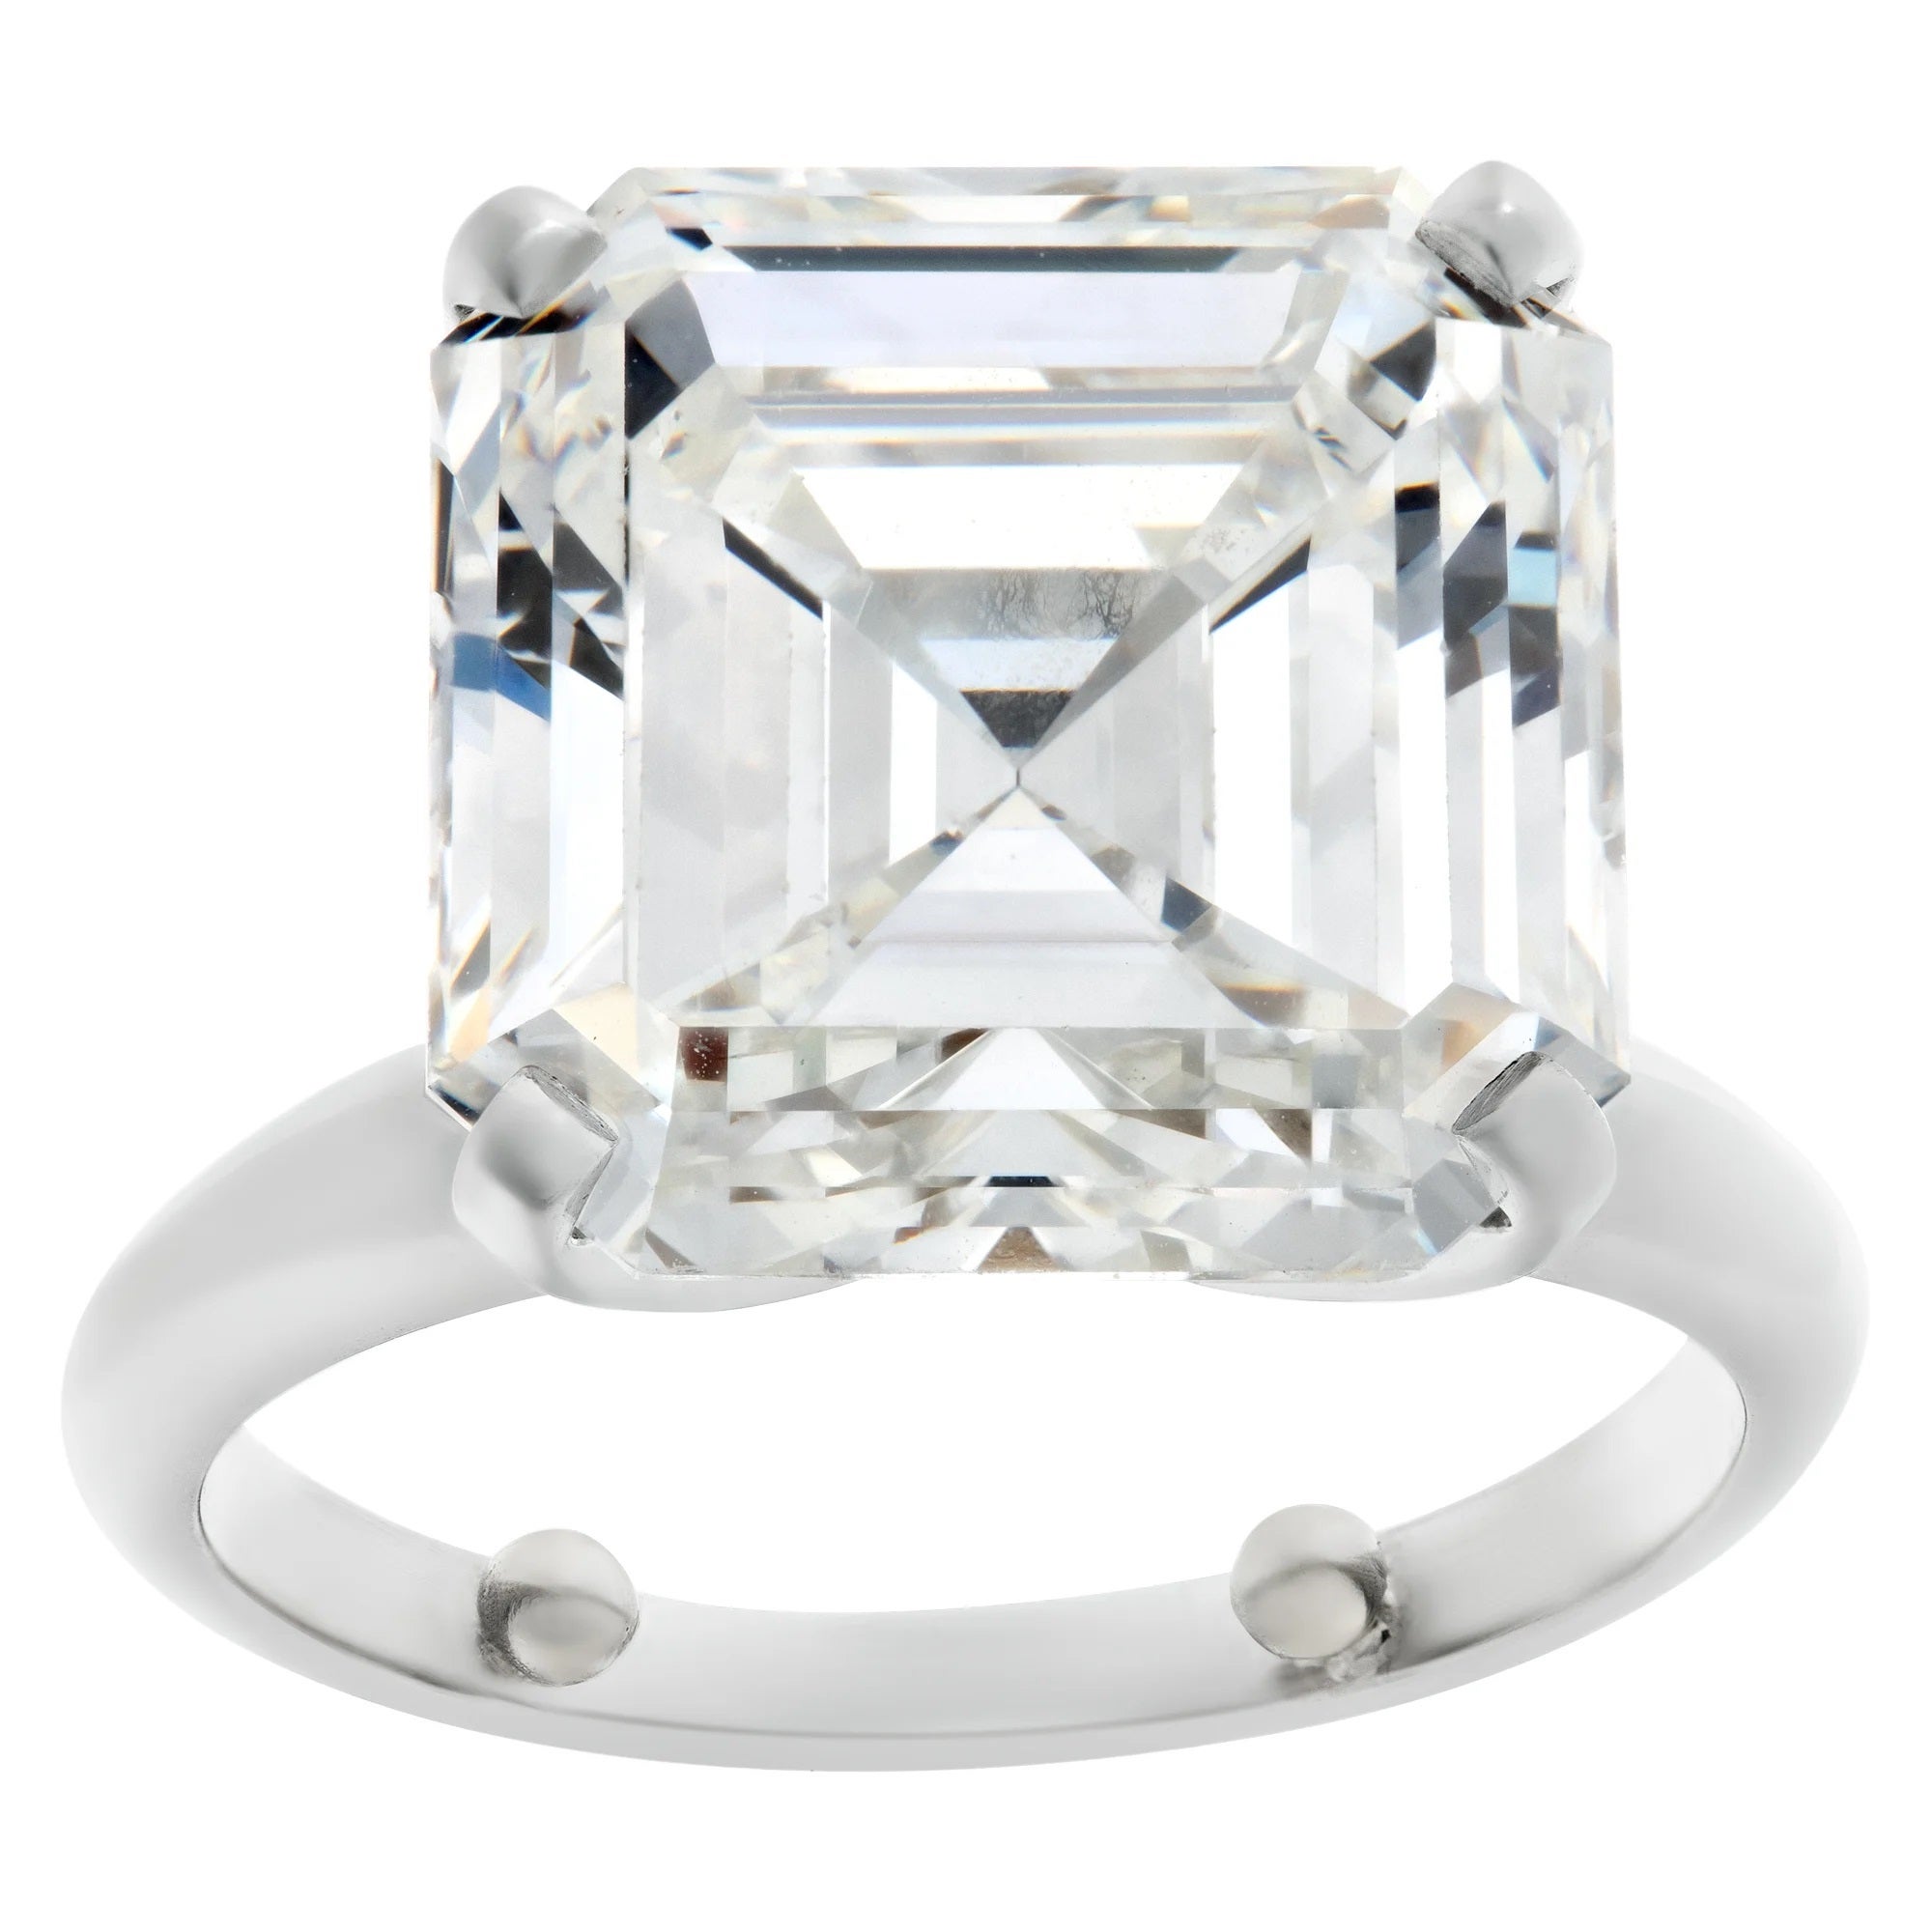 Solitaire en diamant taille Asscher de 9,03 carats de couleur G et de pureté VS 1, certifié GIA 